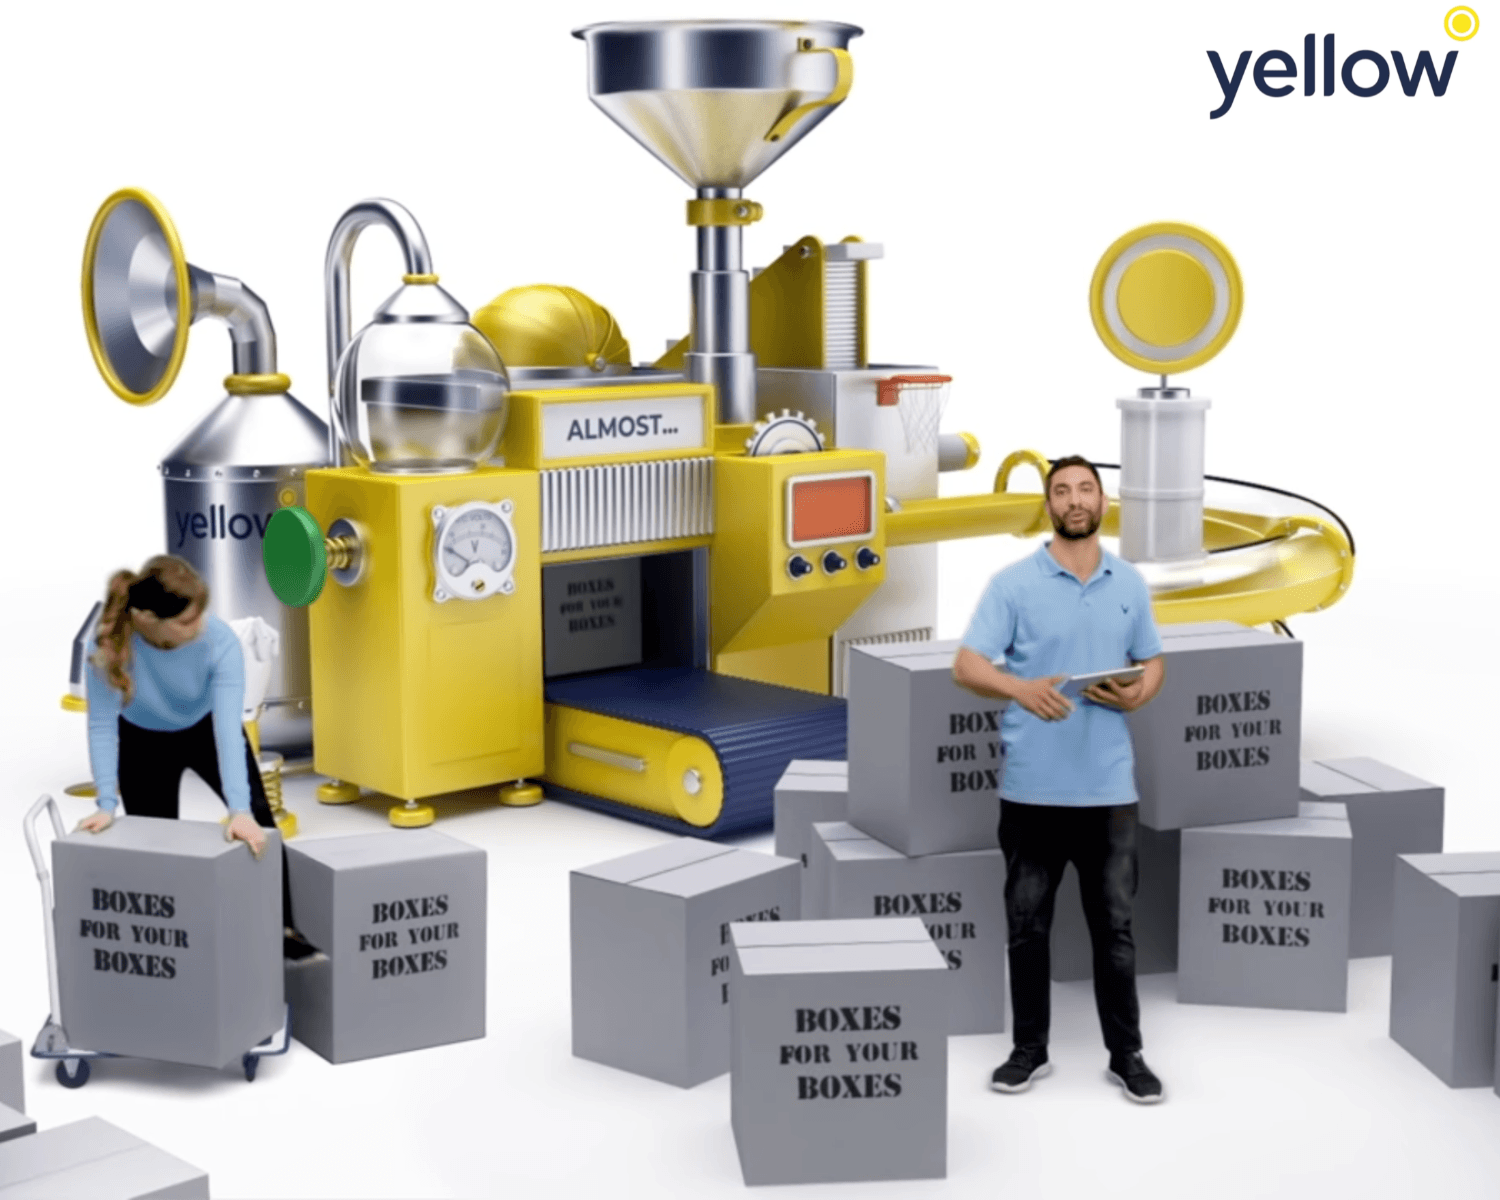 Yellow’s Marketing Machine